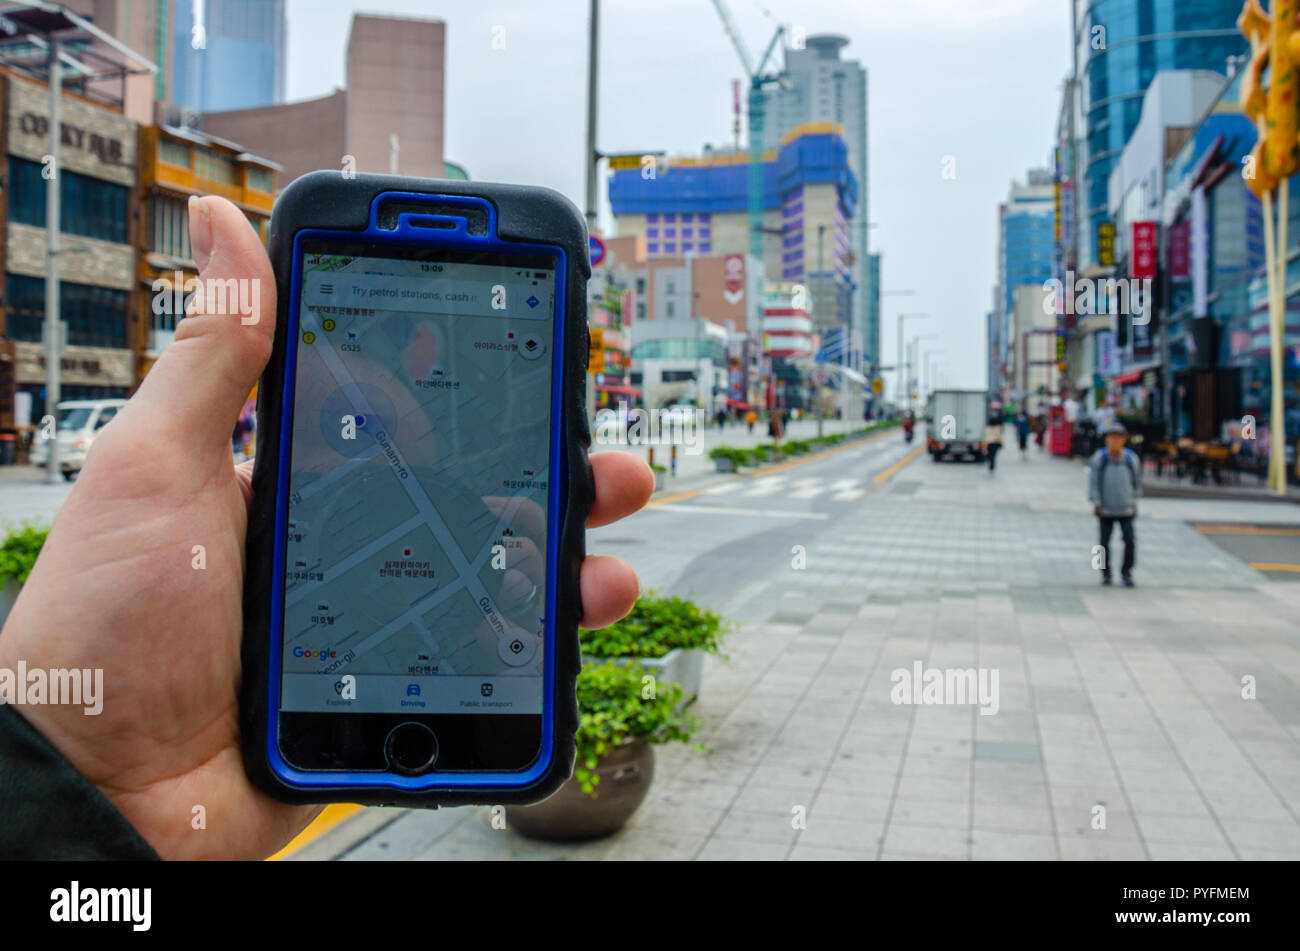 Un mâle main tenant un smartphone, en utilisant Google Maps pour naviguer autour de Haeundae, partie de Busan en Corée du Sud. Banque D'Images